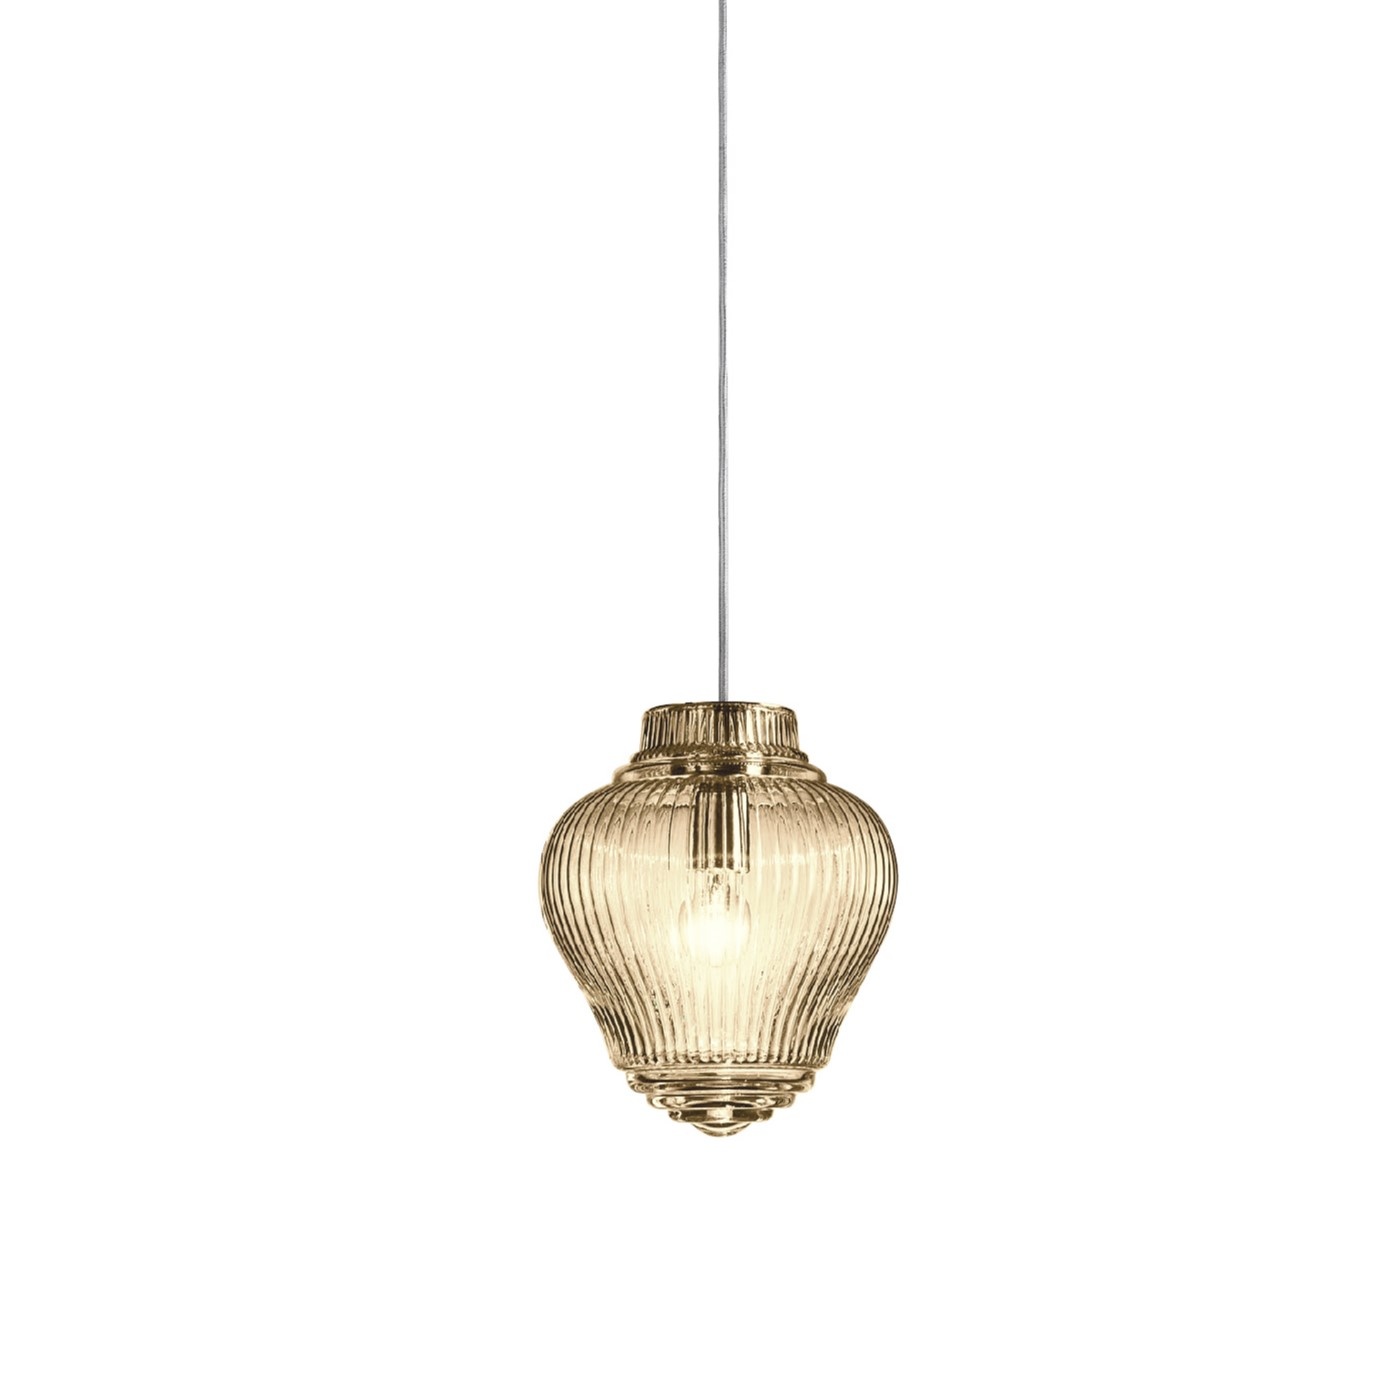 Glazen hanglamp Clyde van het Italiaanse merk -